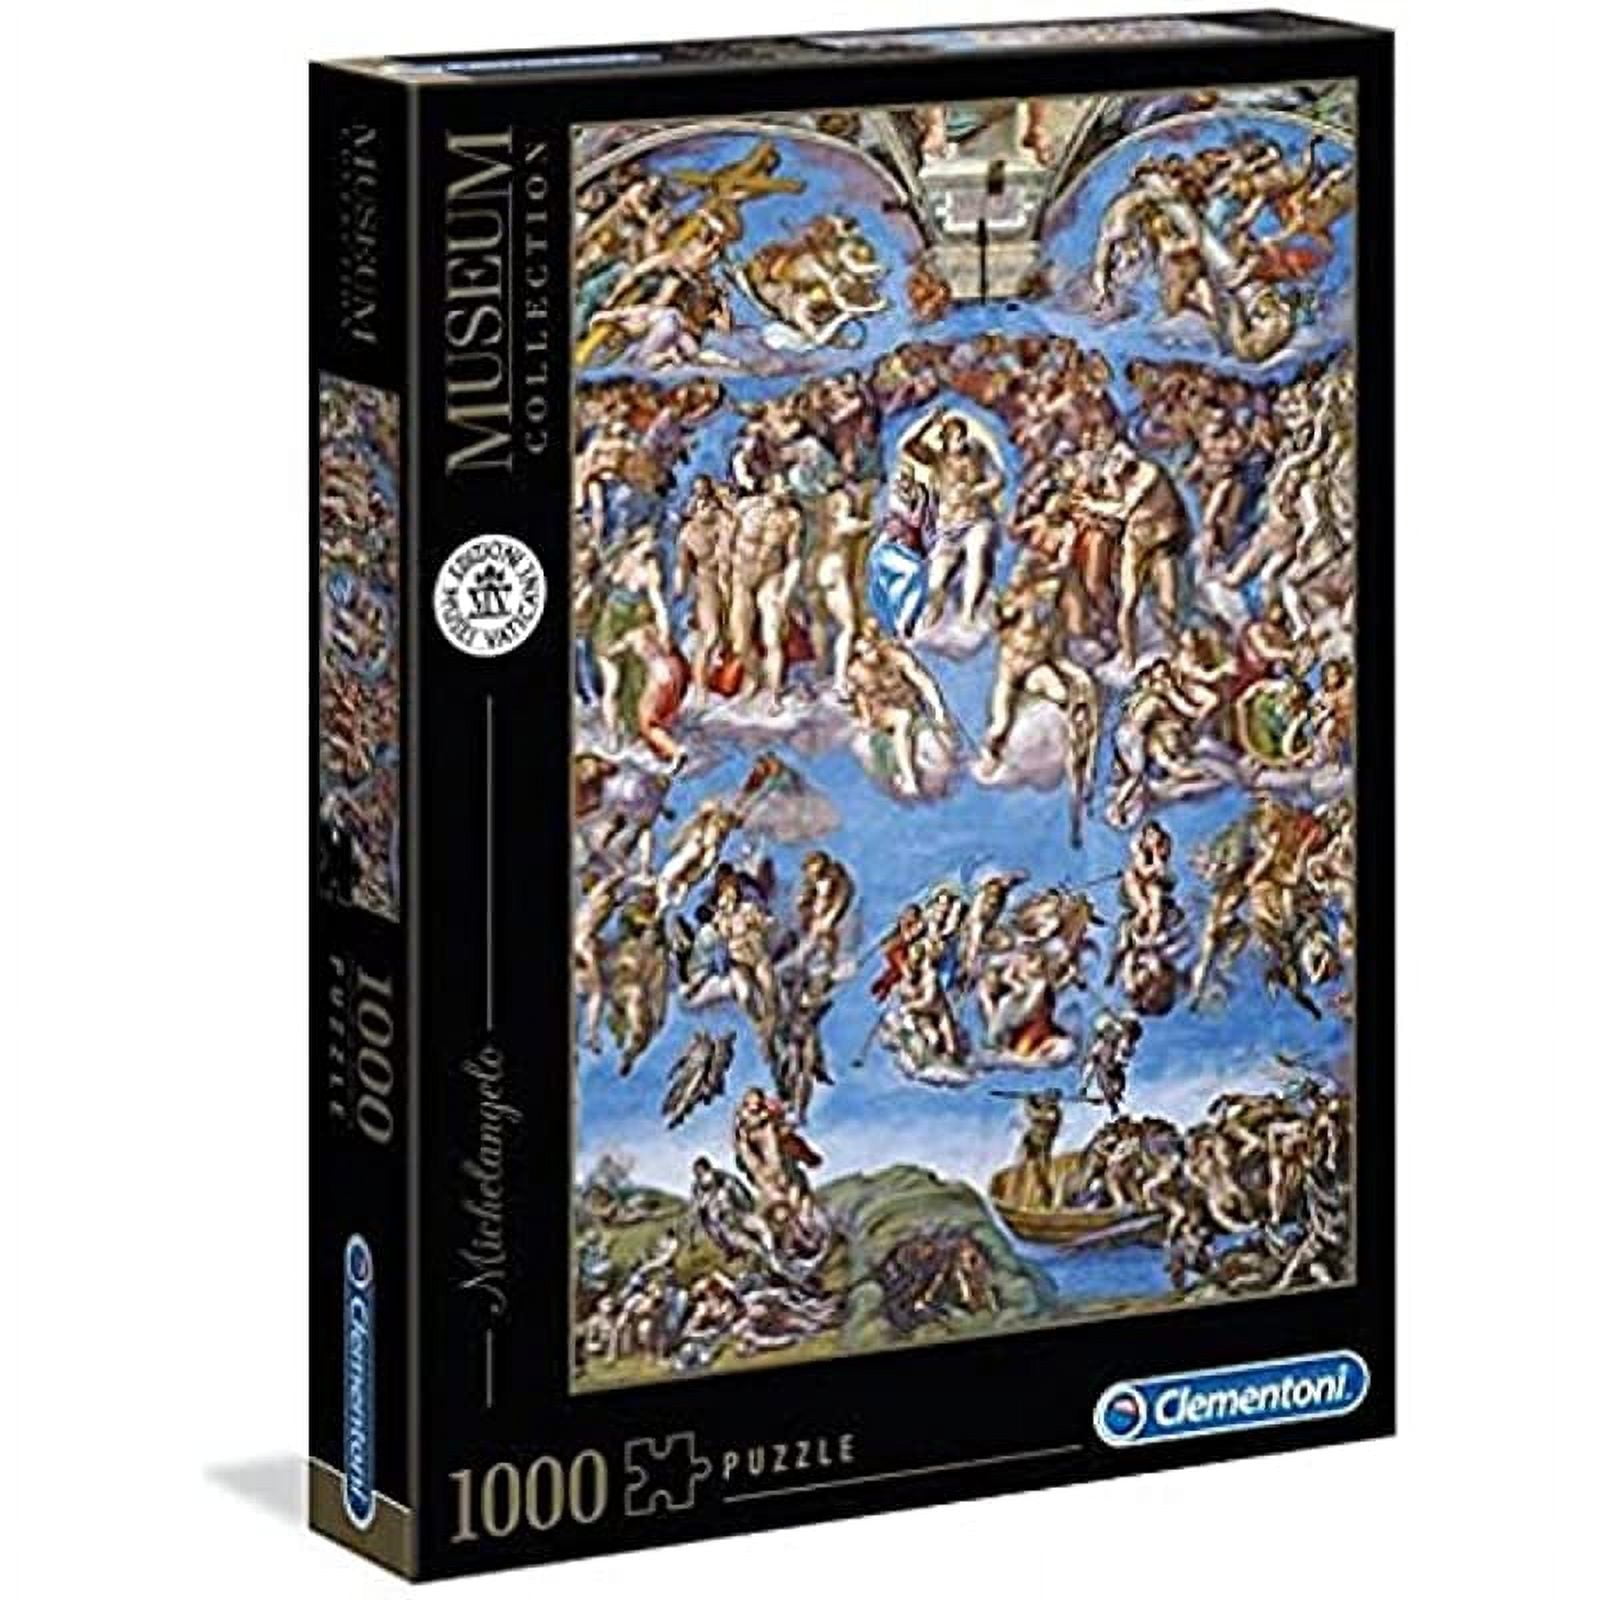 Buffalo Games 2000 PC Puzzle The Last Supper by Leonardo Da Vinci Religious  for sale online